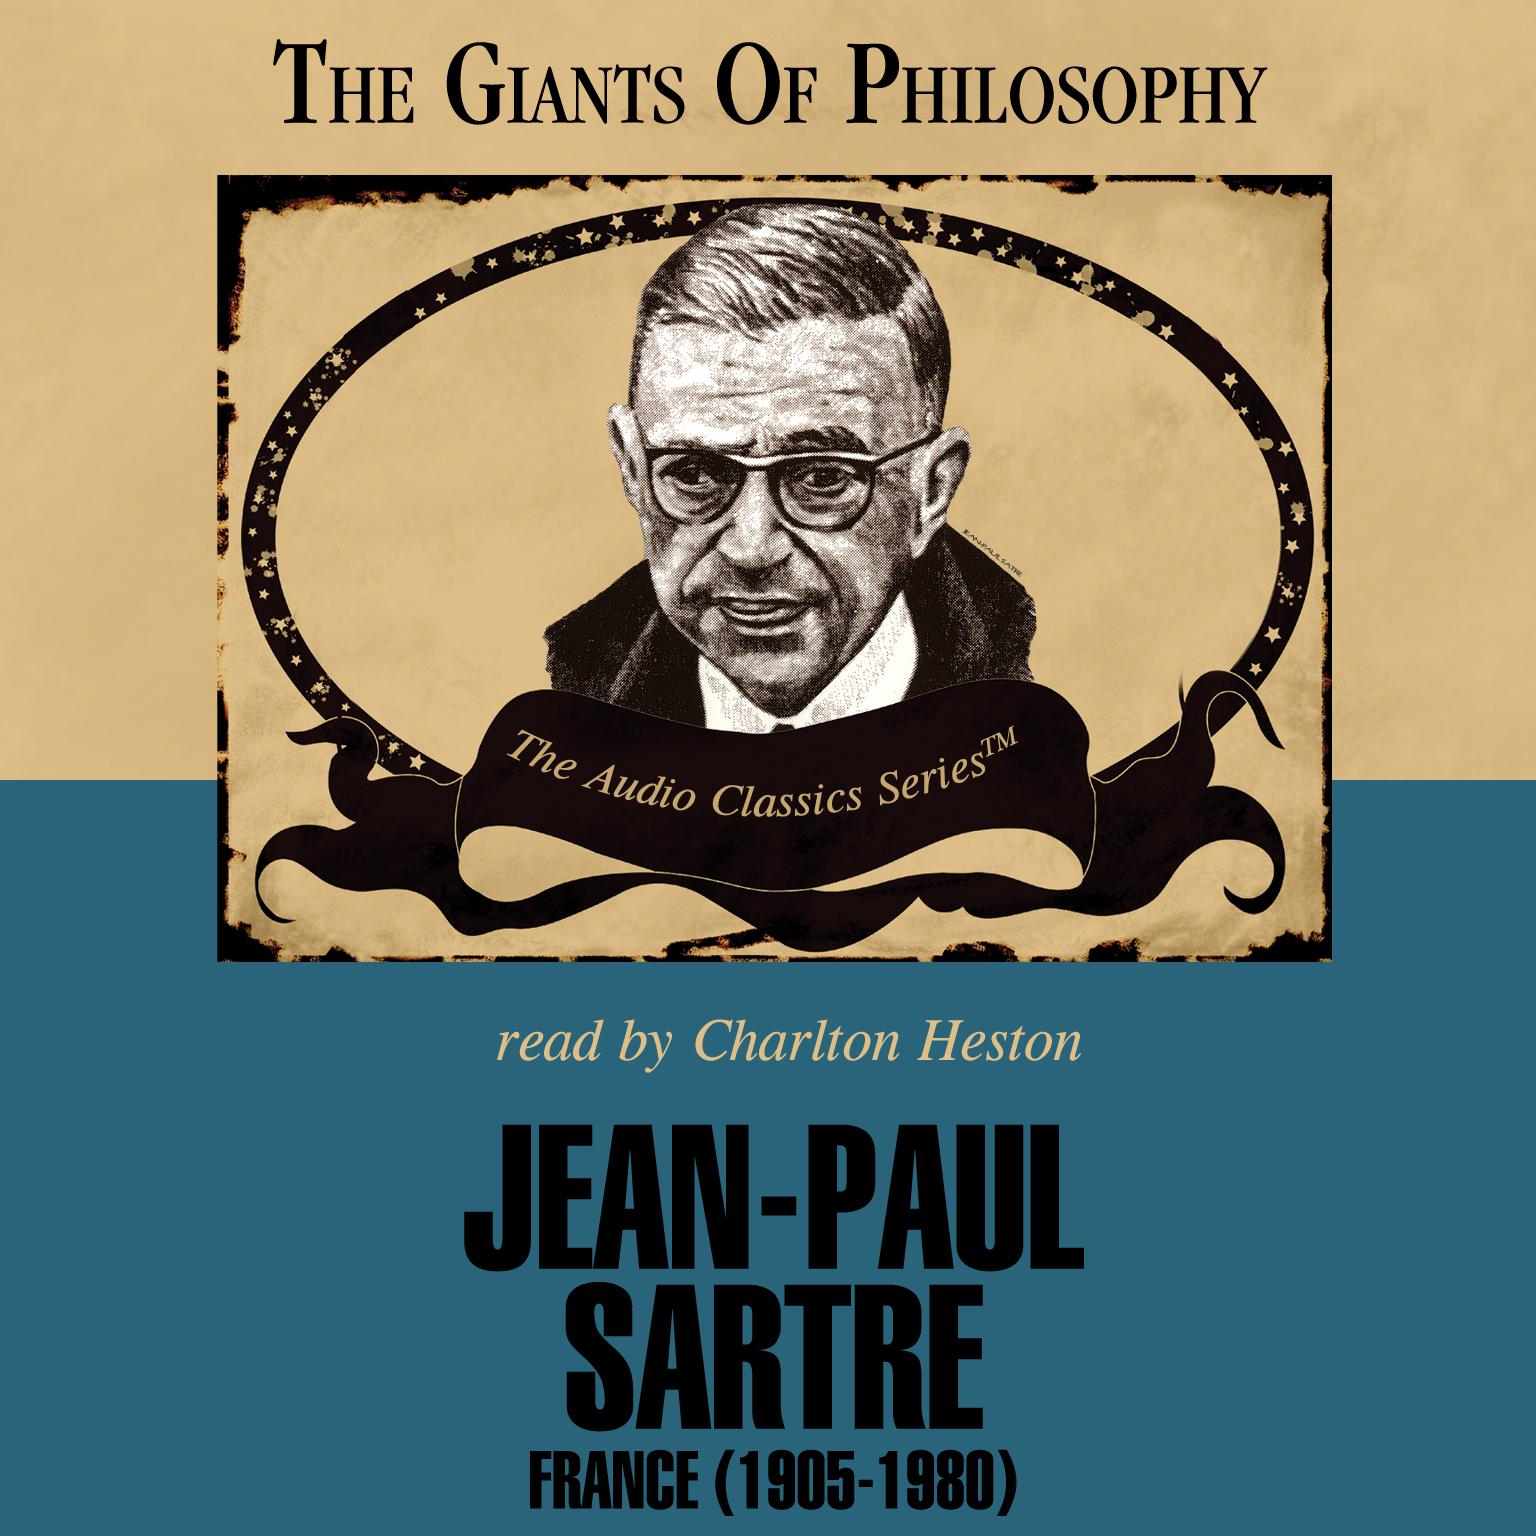 Jean-Paul Sartre Audiobook, by John Compton